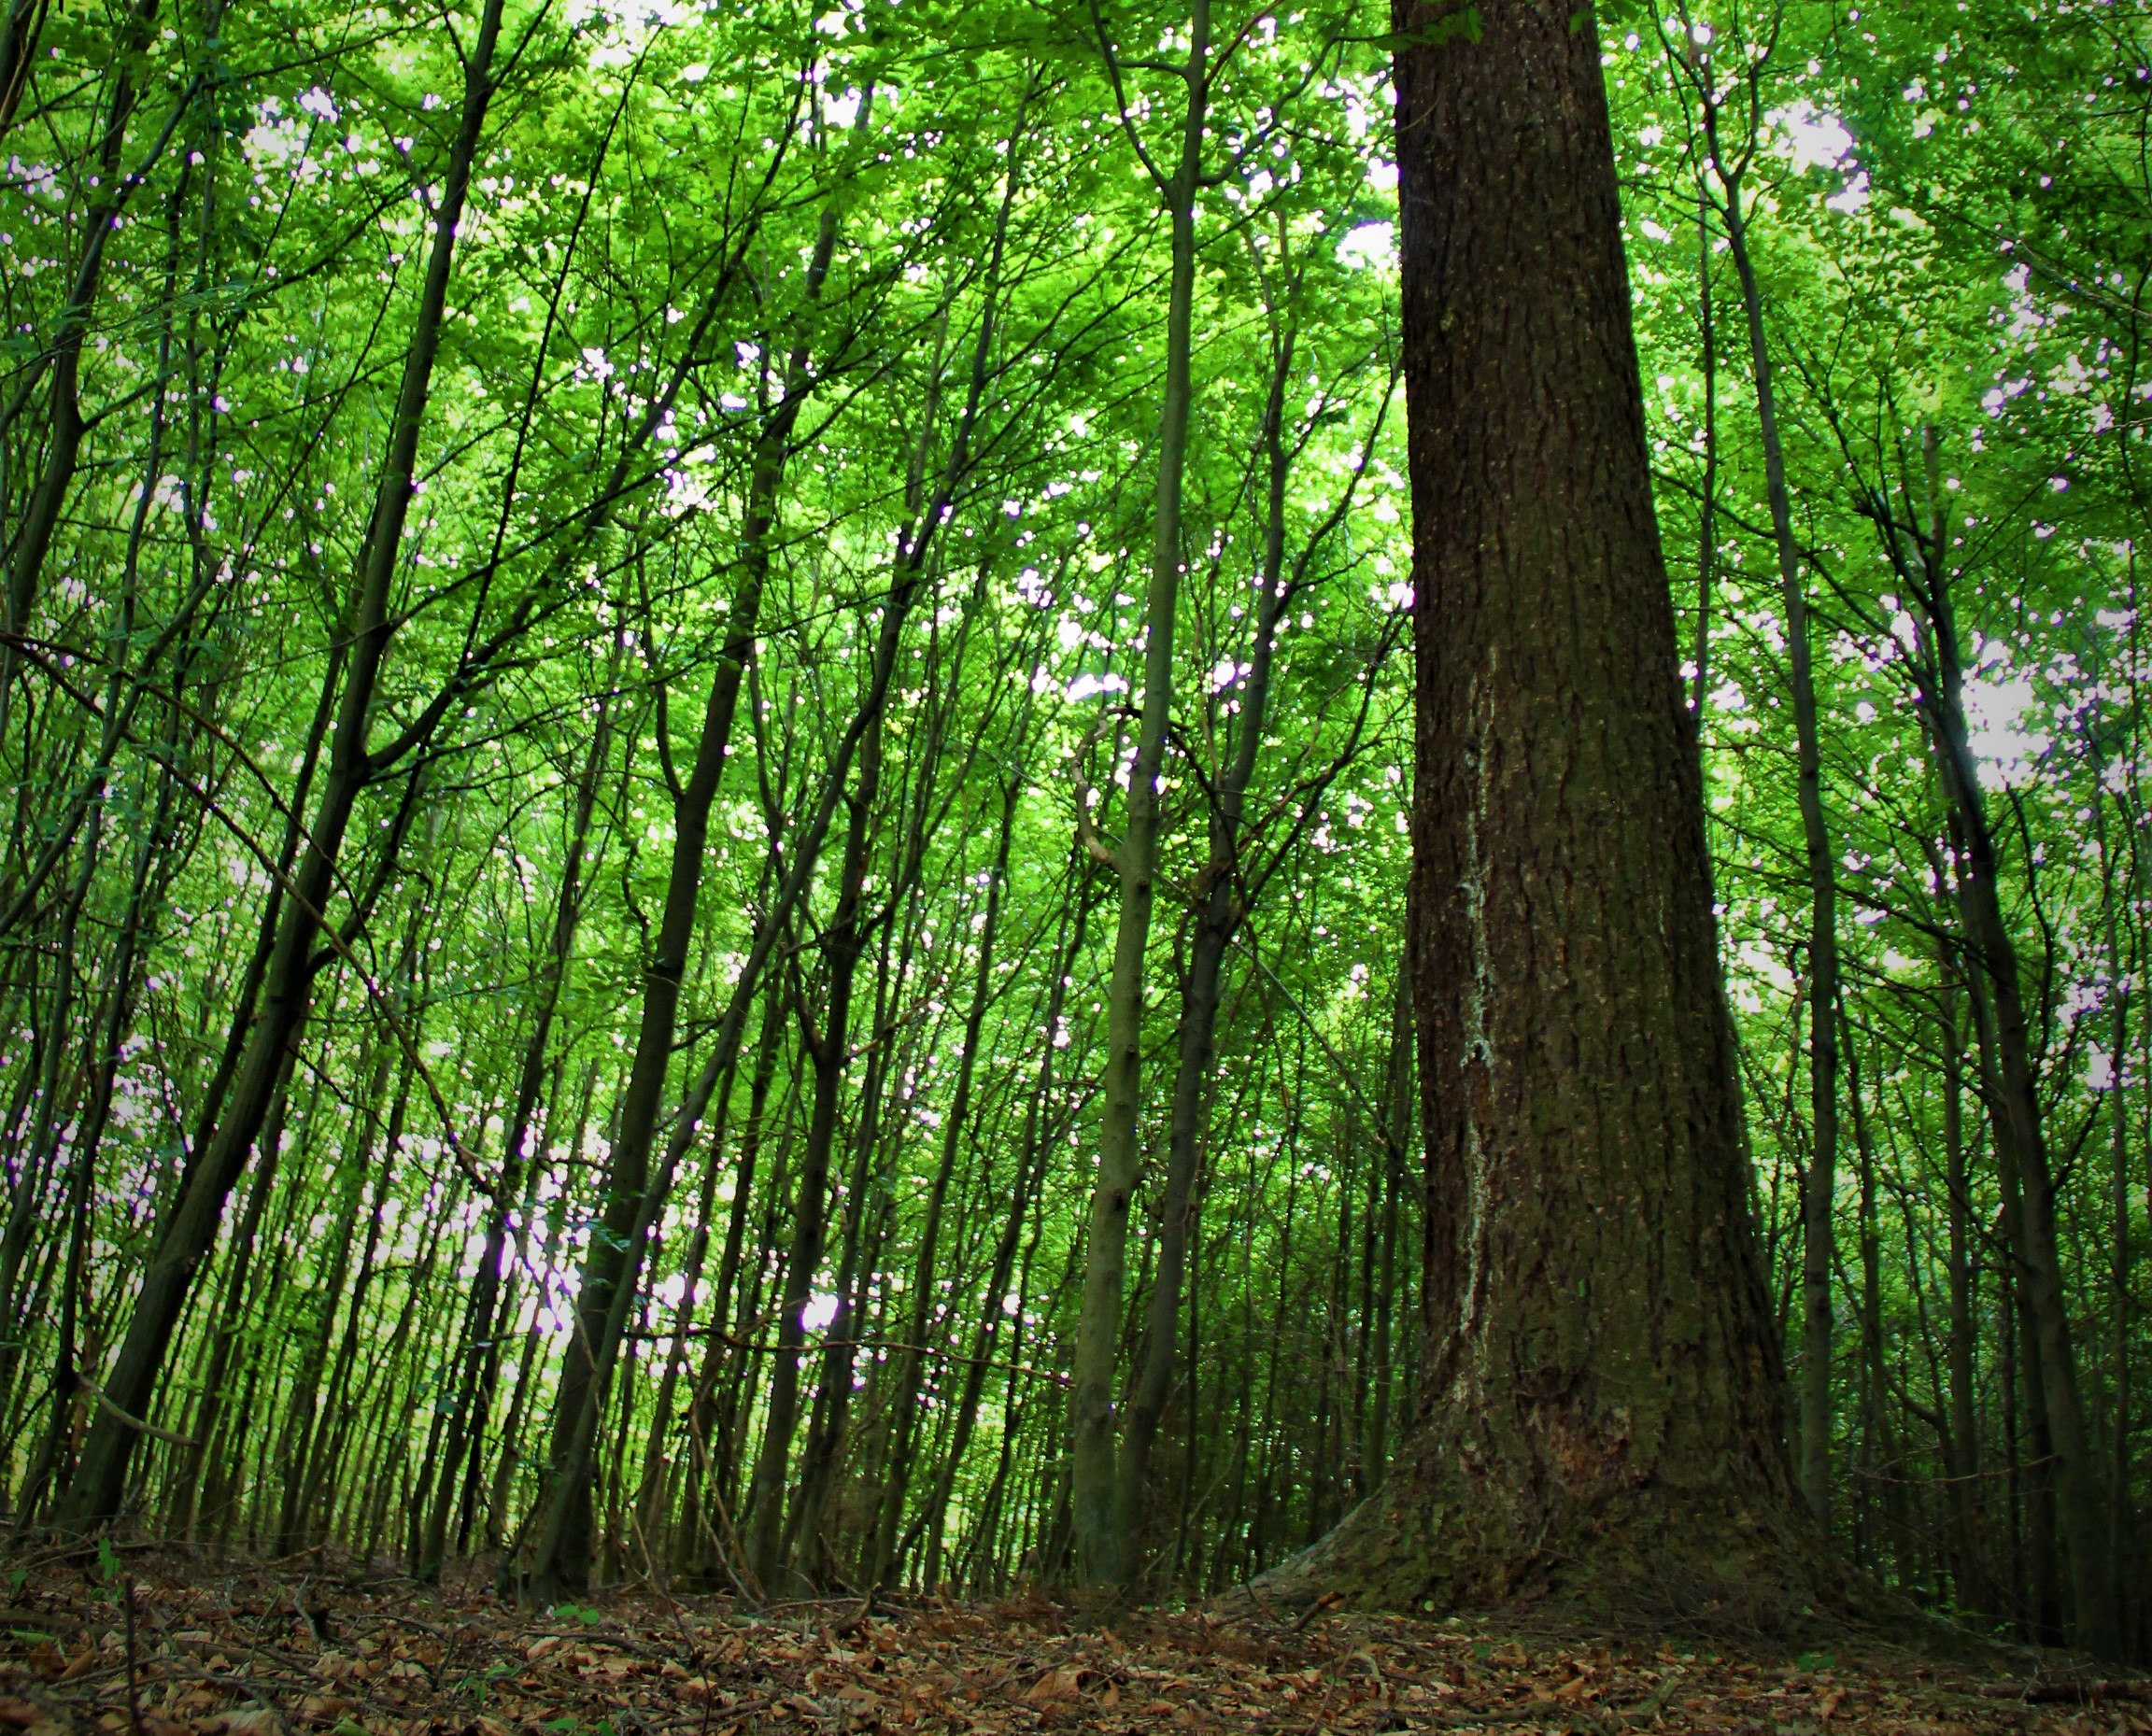 Samotna daglezja z leśnictwa Widawa mierzy w obwodzie 322 cm. Fot. M. Zapart